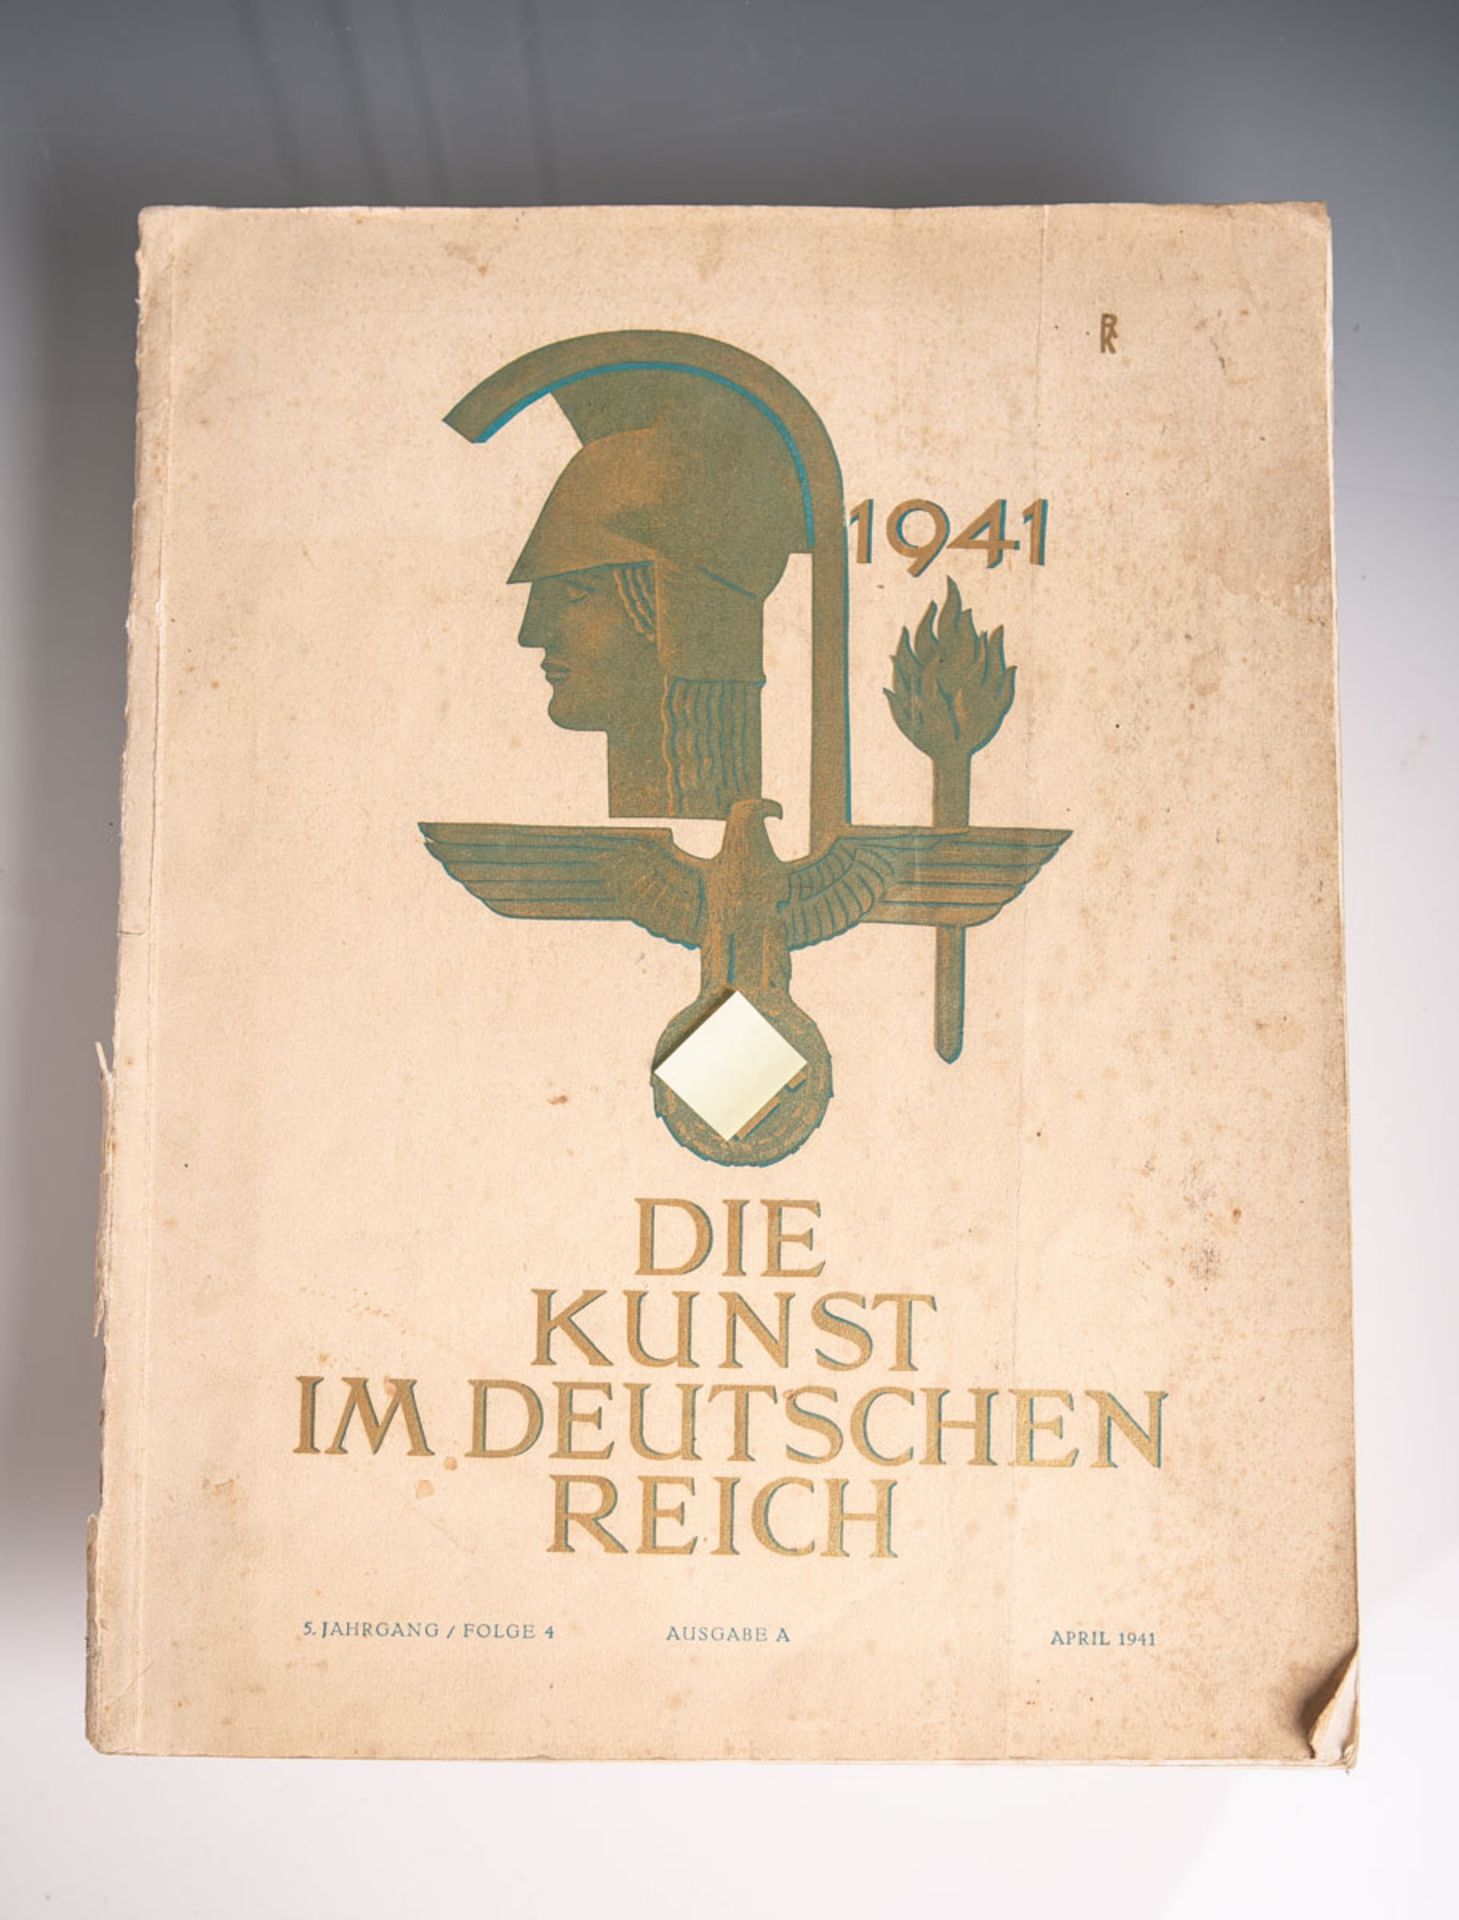 Heft "Die Kunst im Deutschen Reich", Ausgabe A, 5. Jahrgang, Folge 4, April 1941. Lager- u.